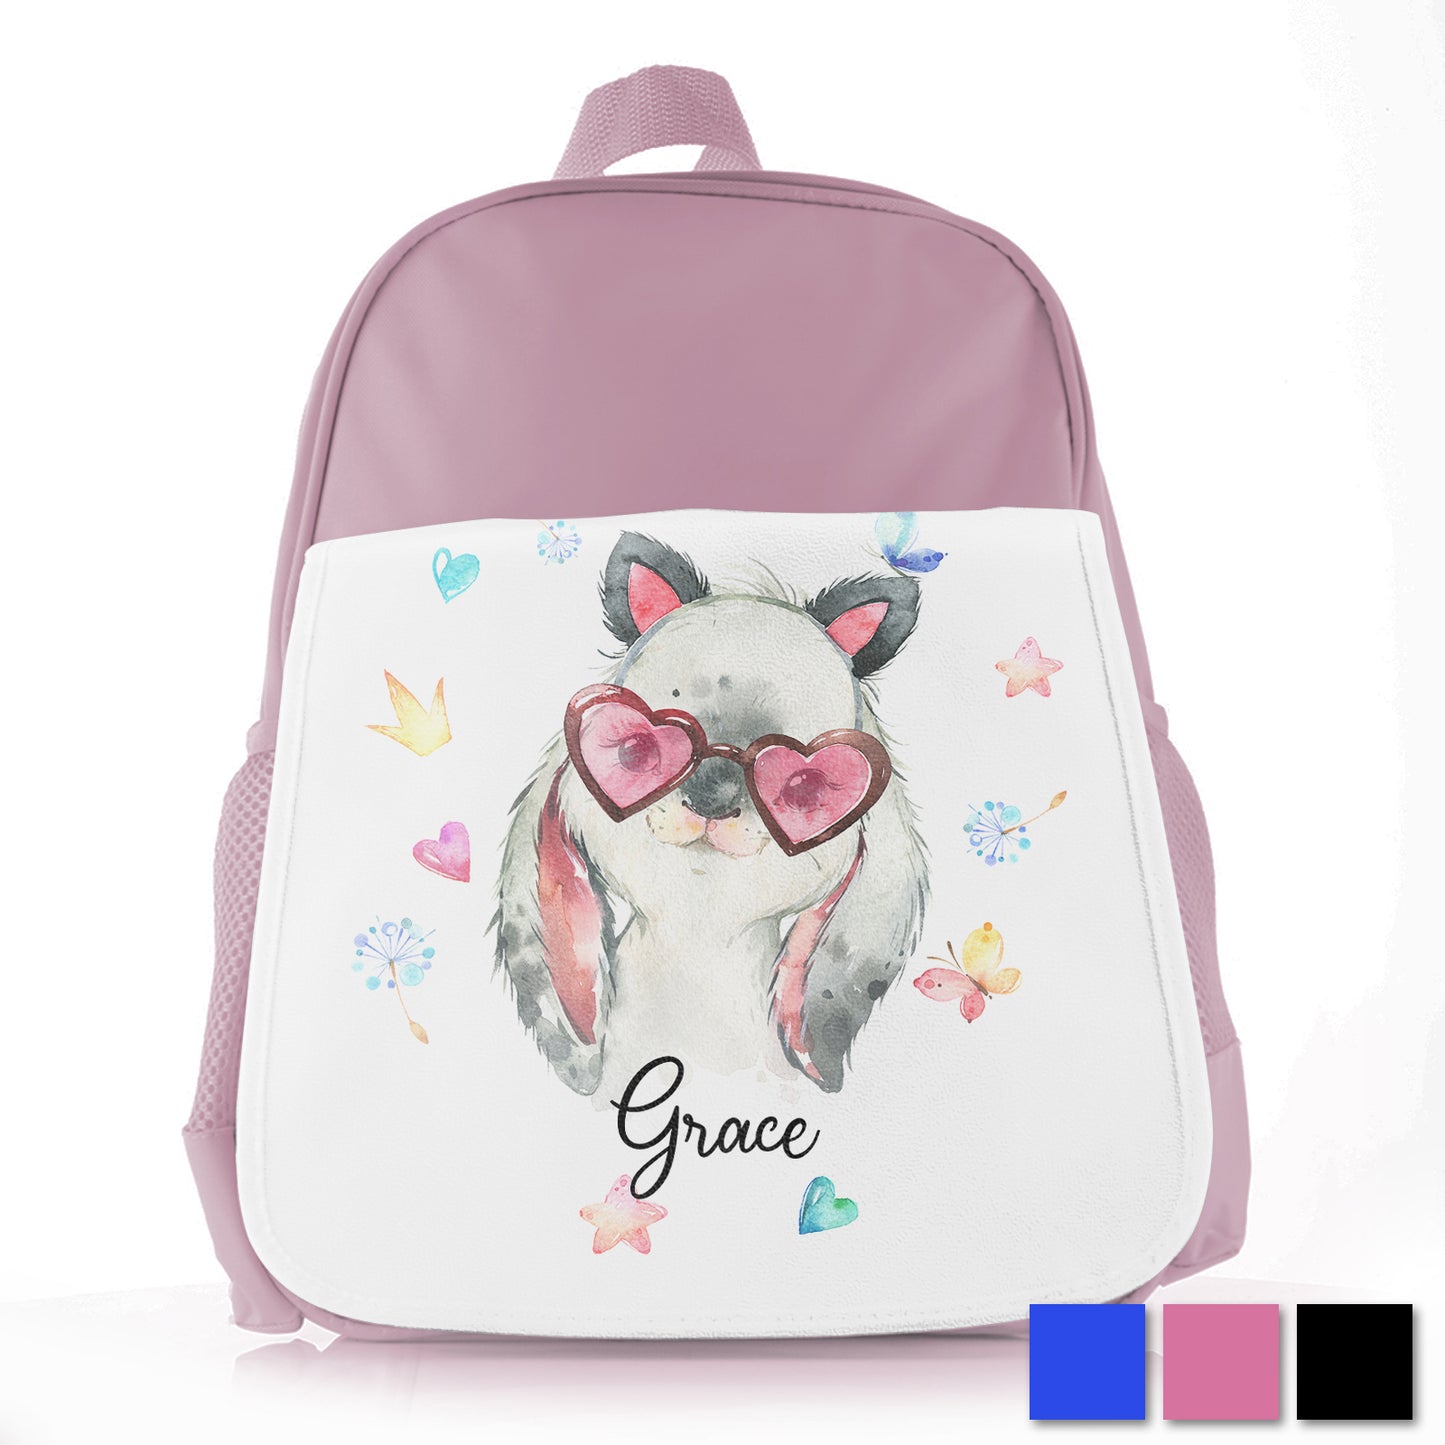 Personalised Rabbit with Cat Ears Kids School Bag/Rucksack